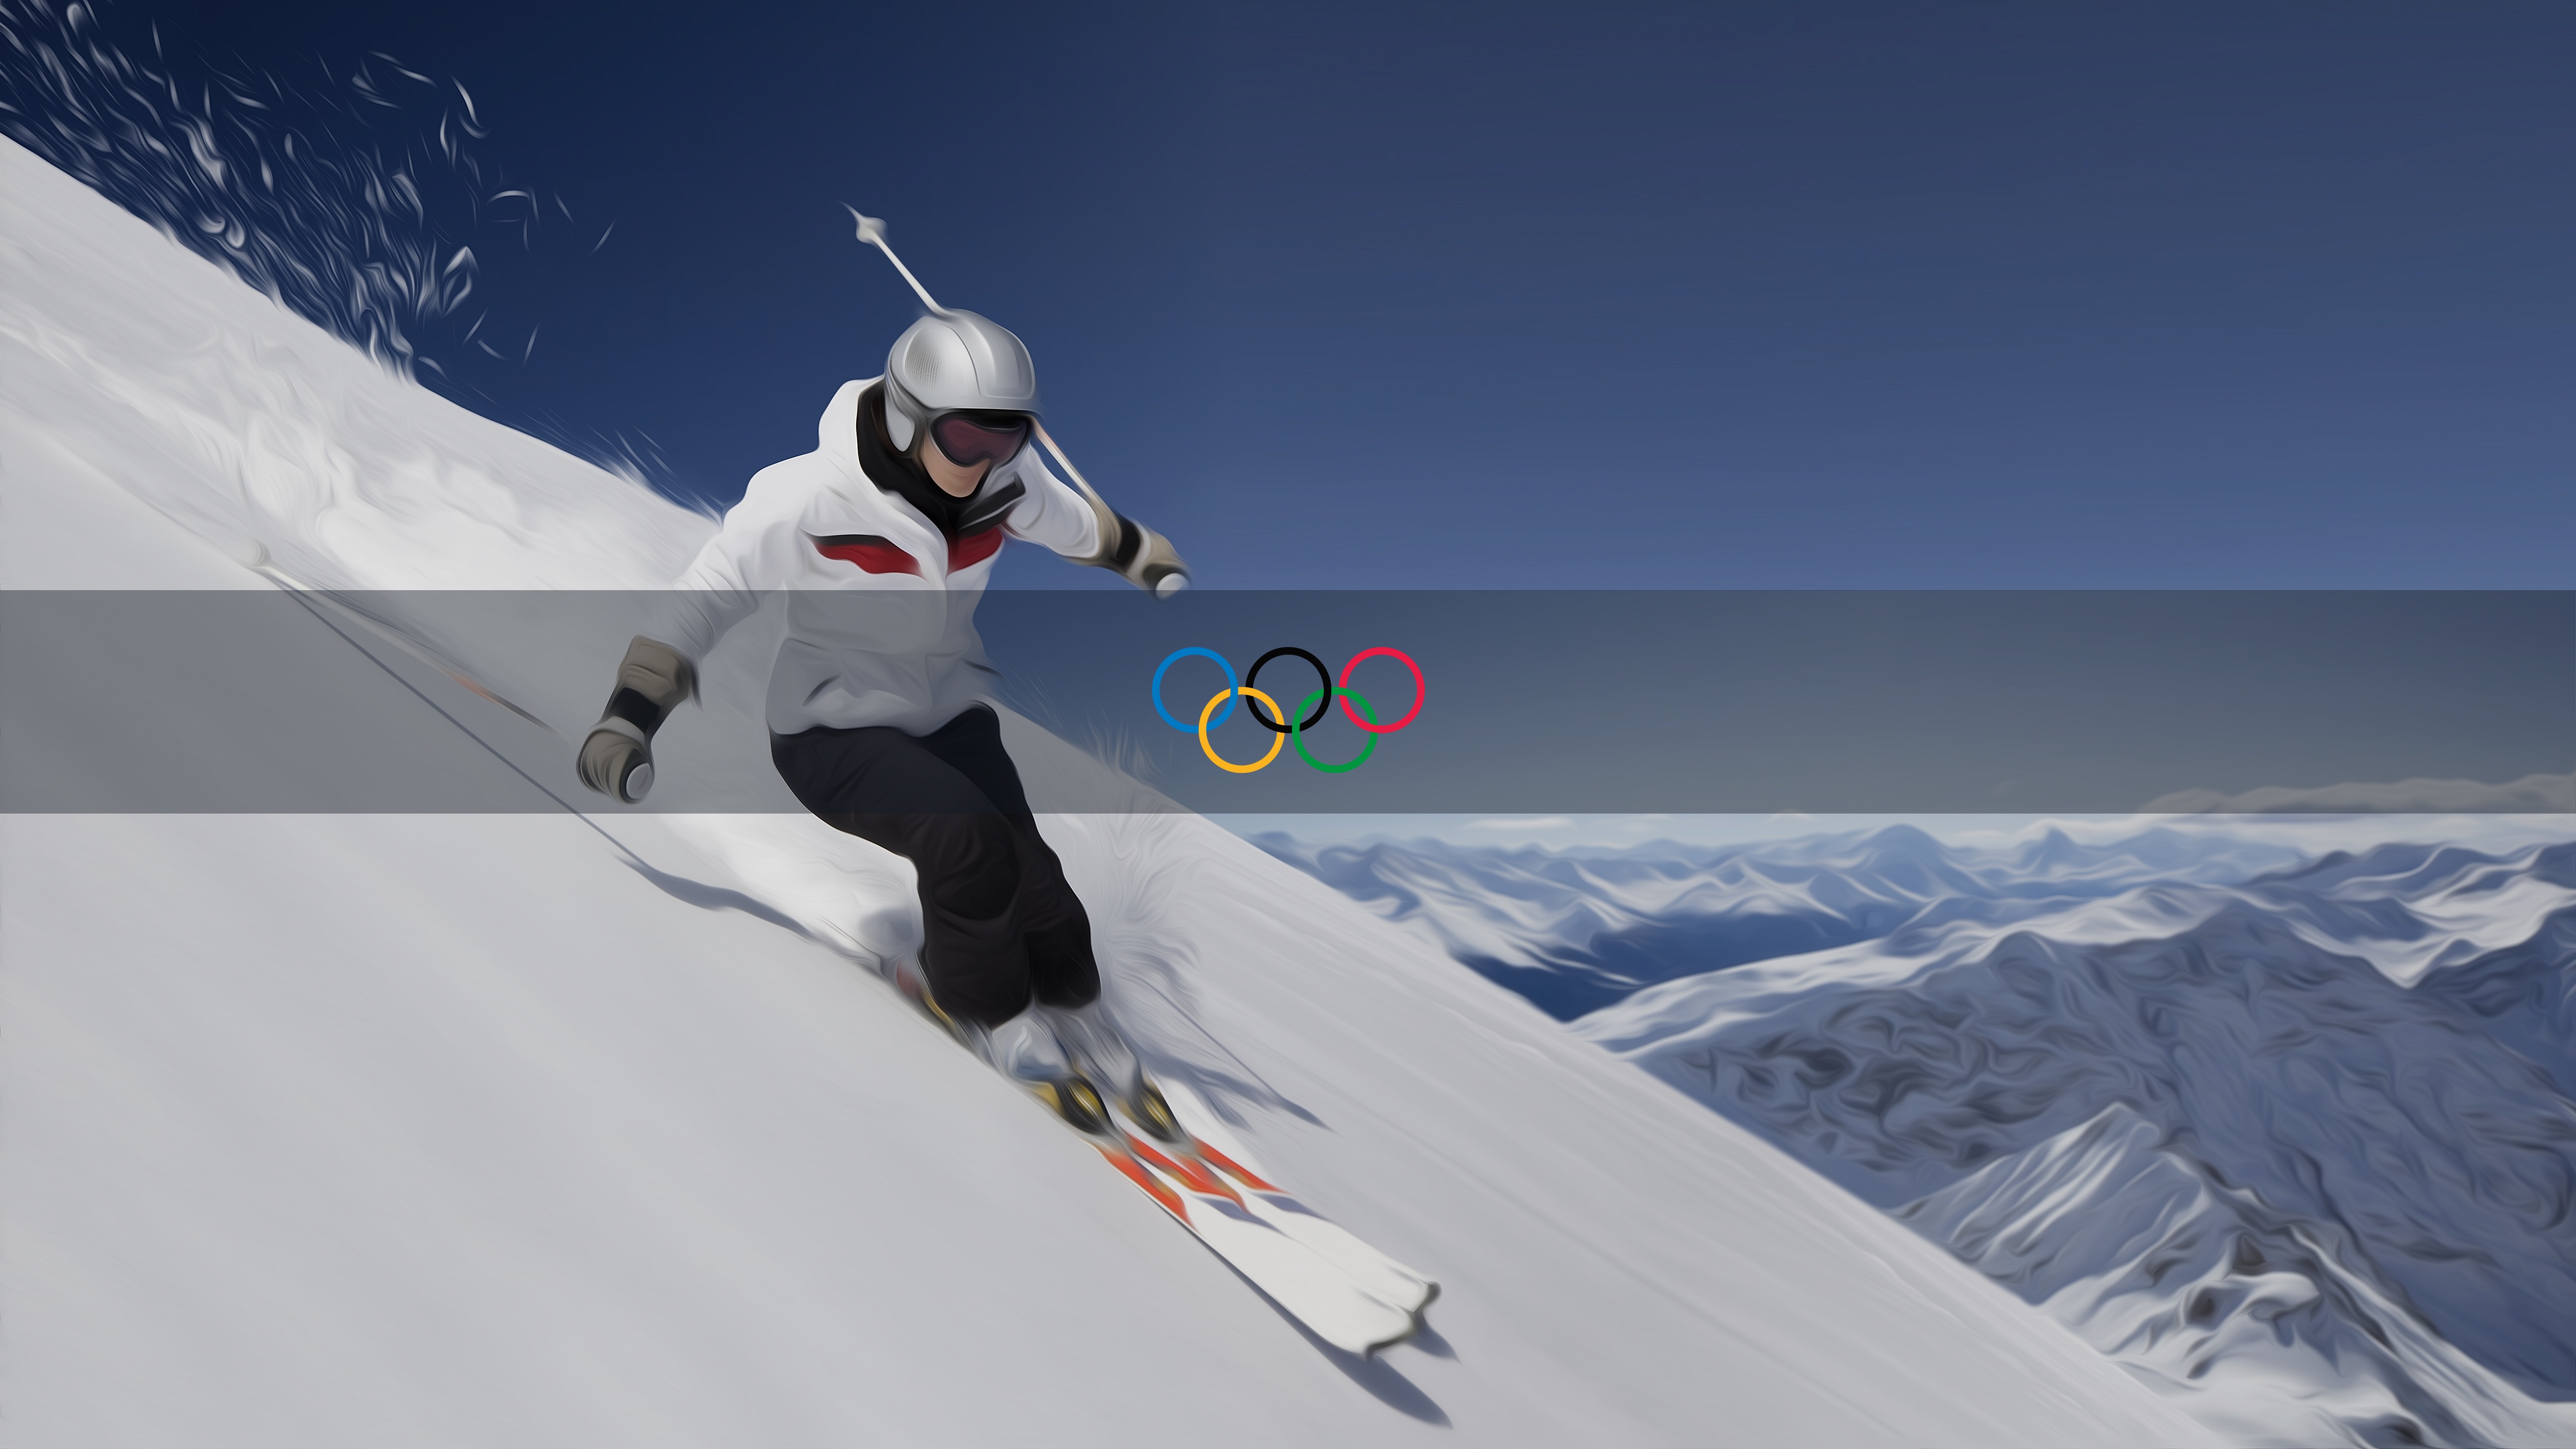 올림픽 벽지,눈,스키,익스트림 스포츠,야외 활동,프리 스타일 스키